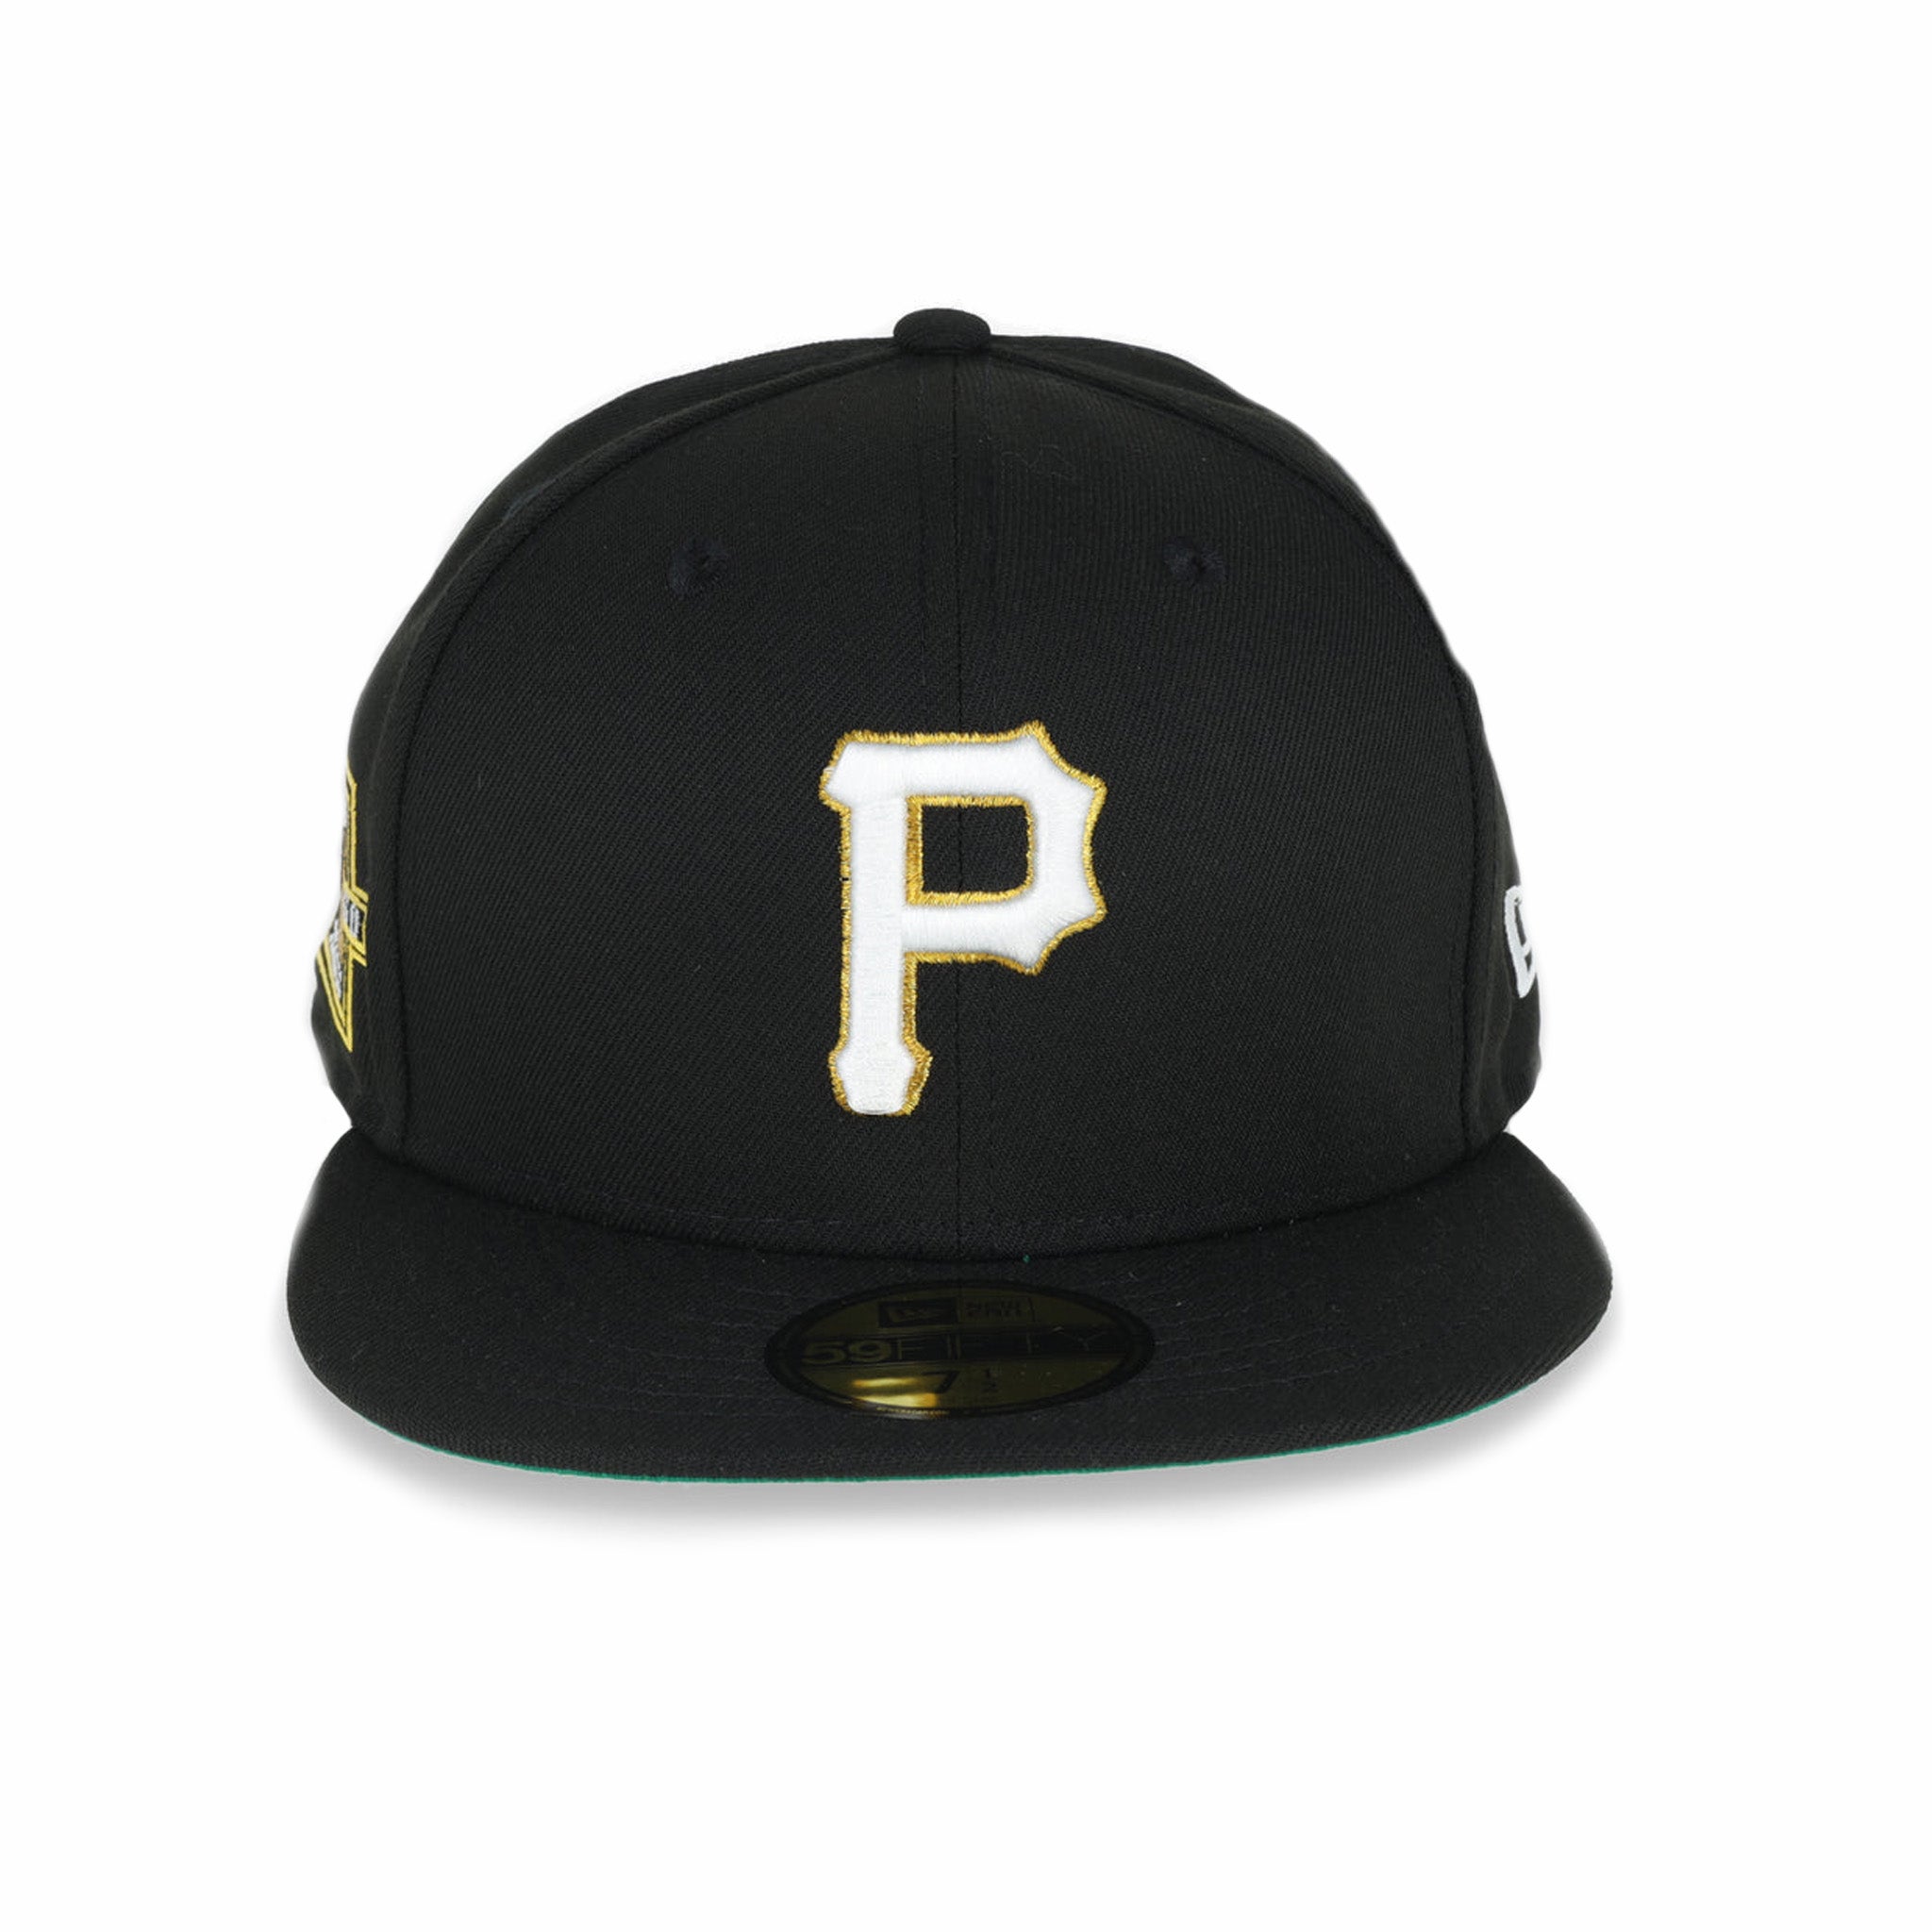 Nuova Era, New Era Pittsburg Pirates "Metallic Logo" 59FIFTY (nero)